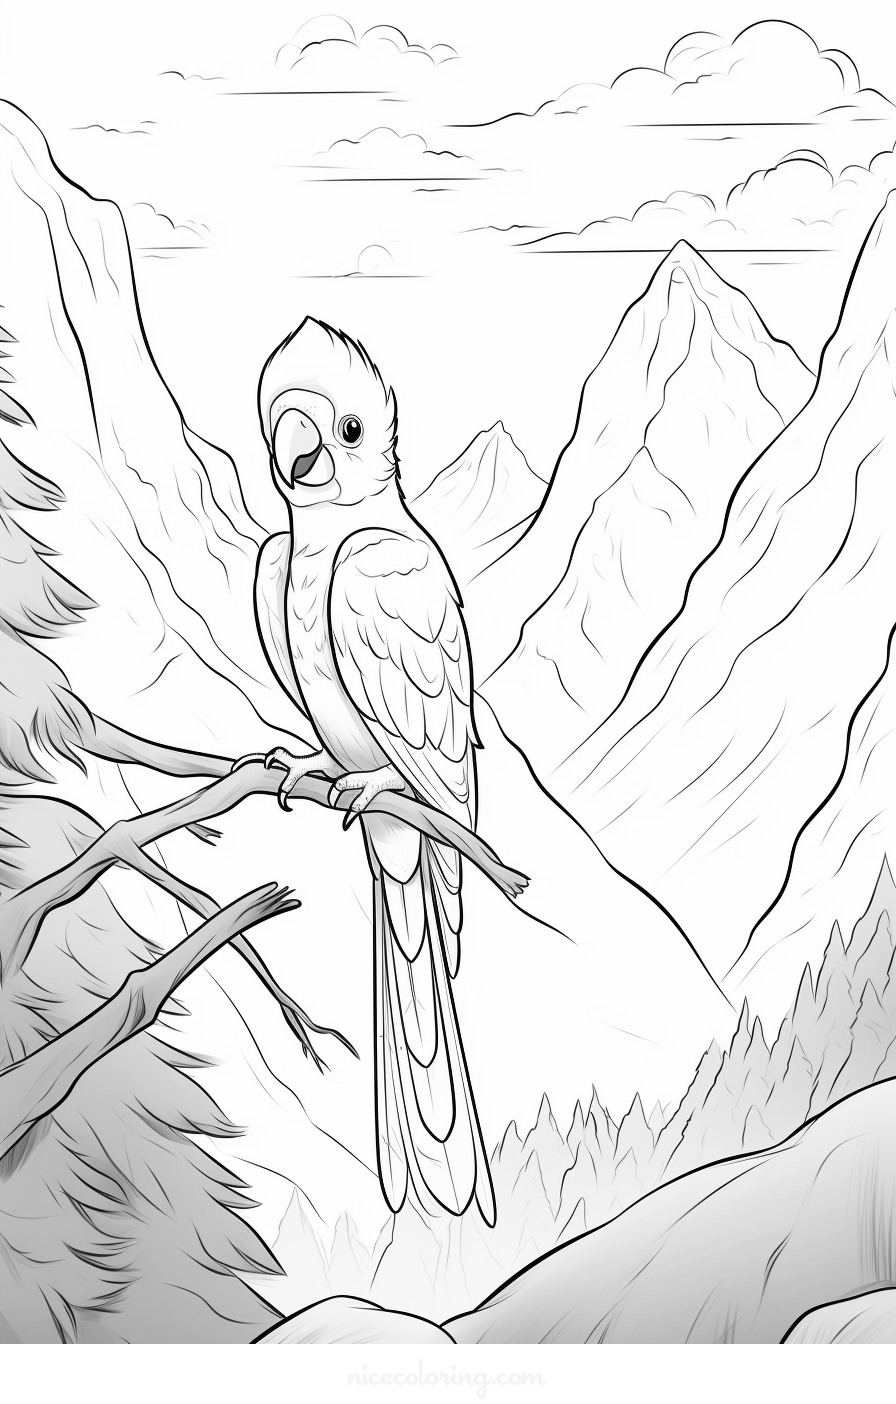 Un oiseau perché sur une branche